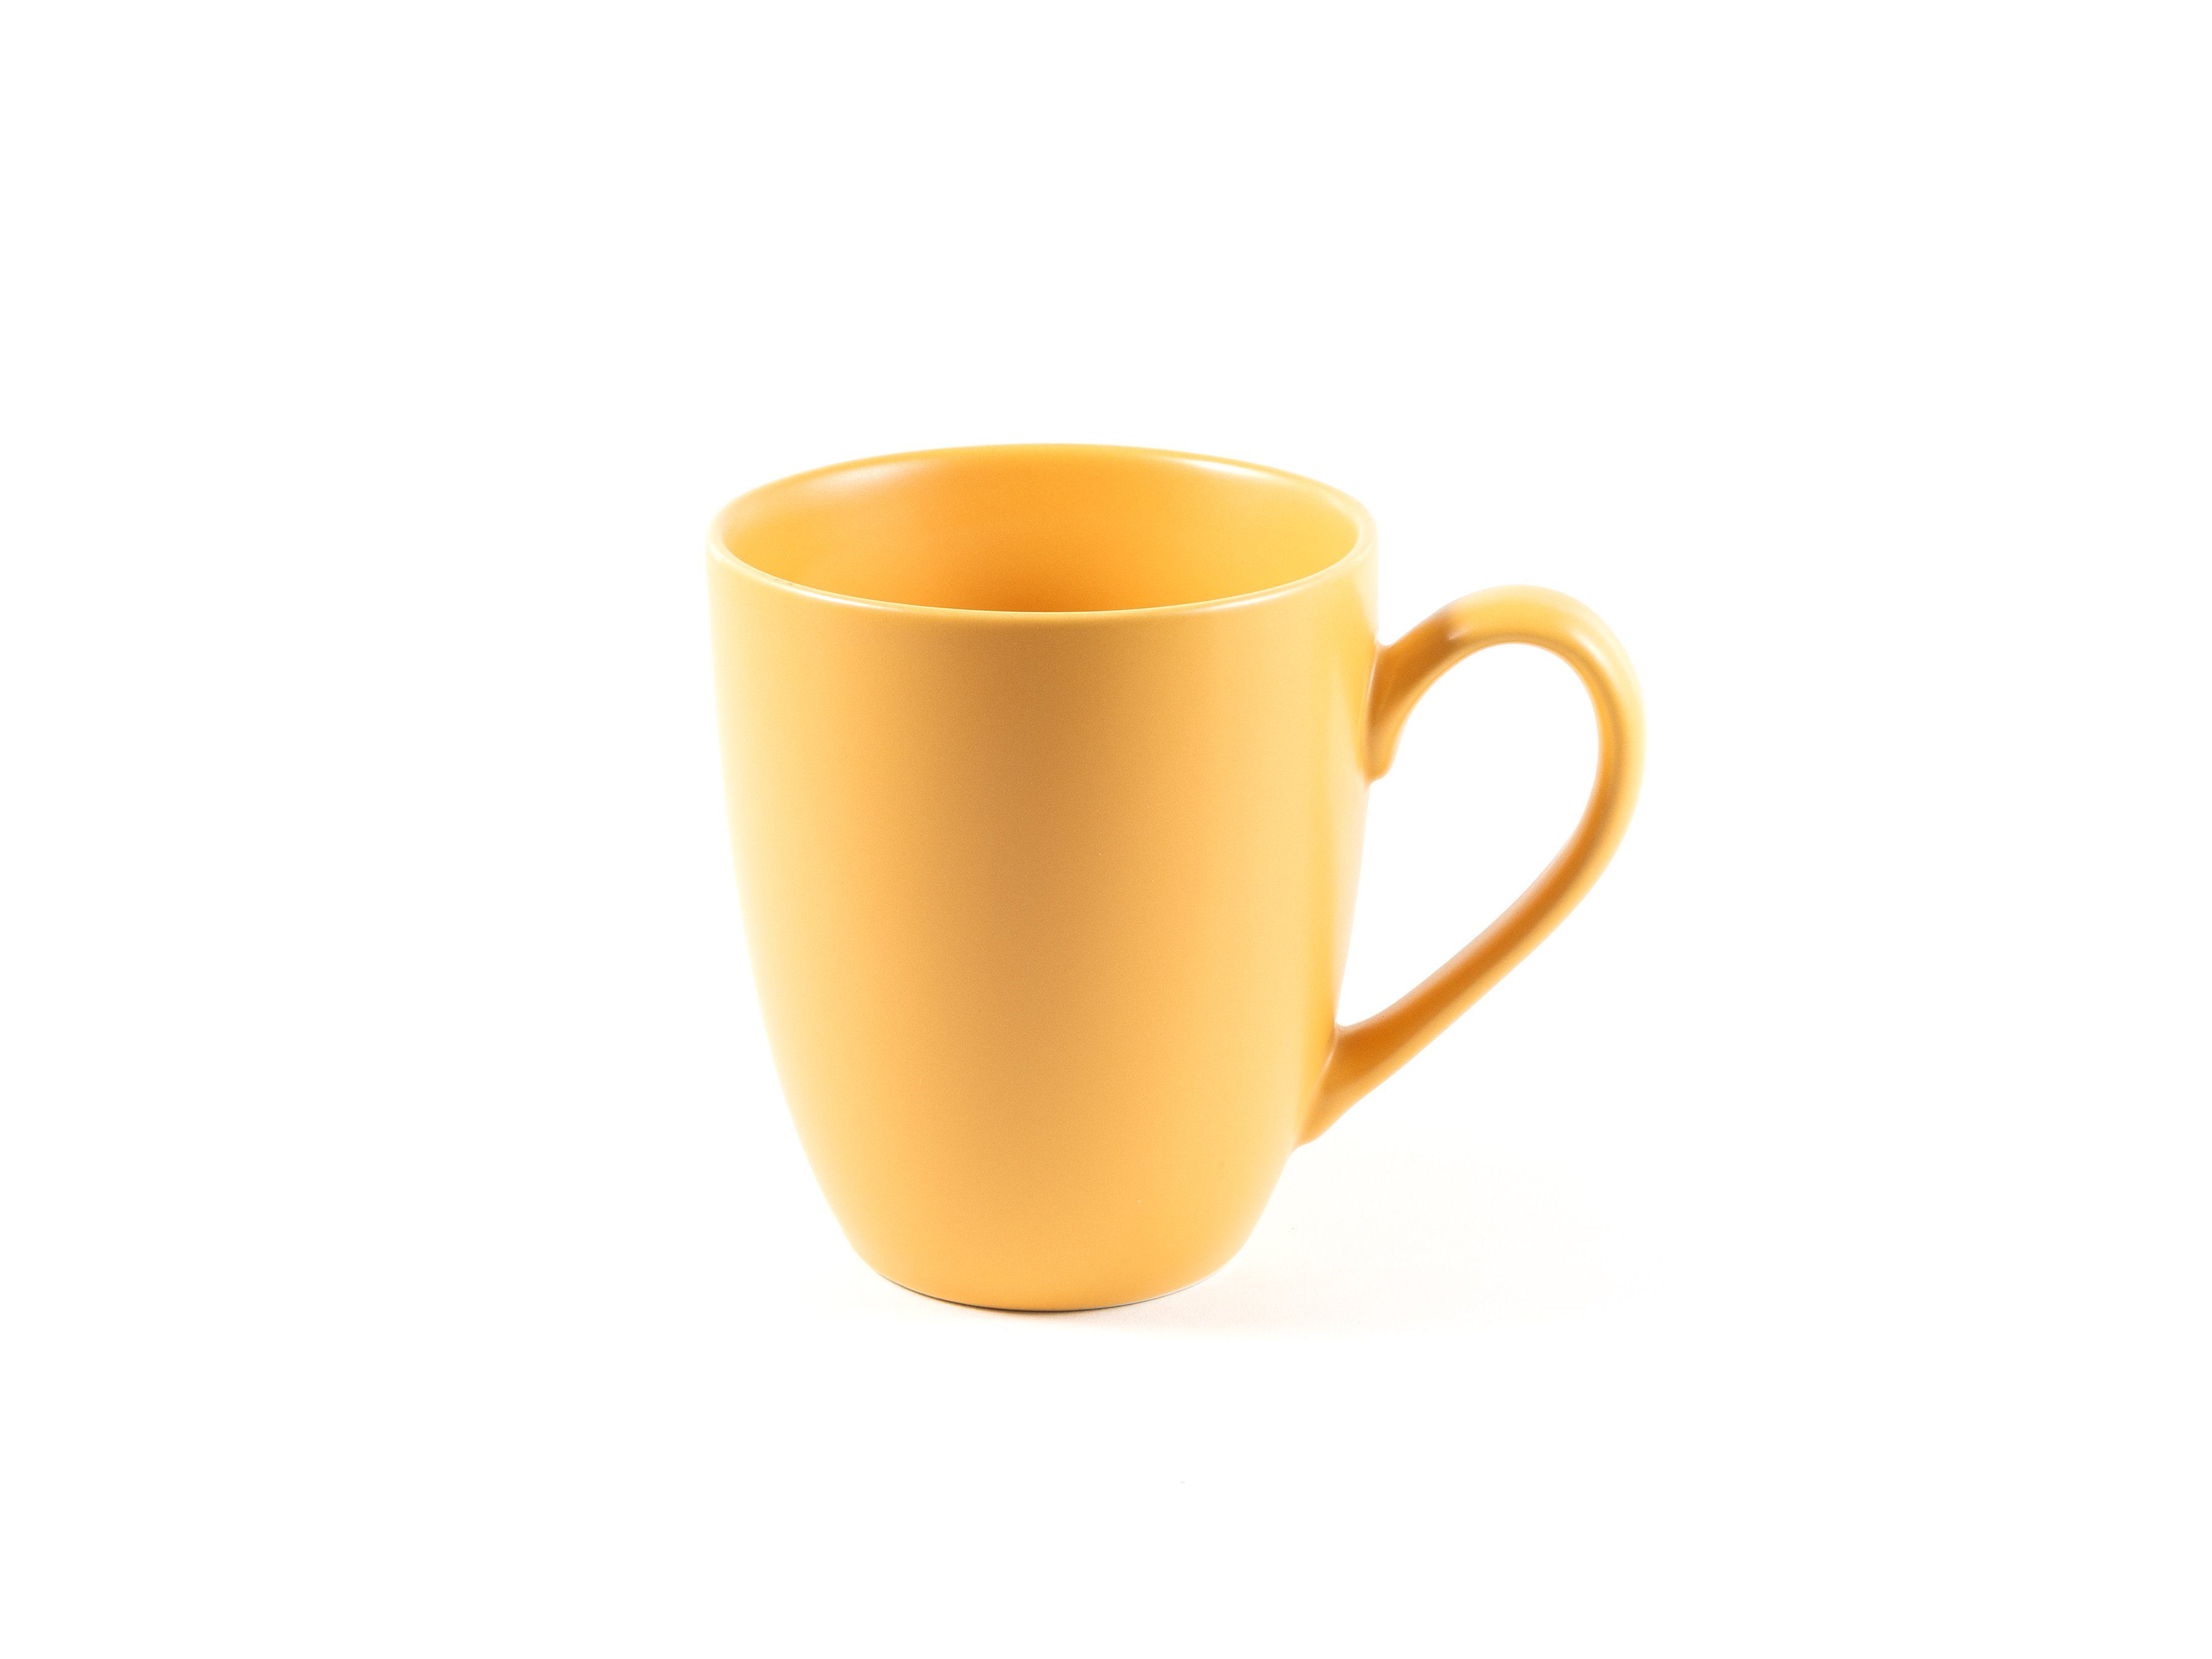 Hanseküche Tasse Teetasse mit Deckel – Teebecher Ultrafeinfilter, Dickwandige Sieb Keramik, XXL Thermoeffekt, Keramik Orange und 650ml, mit